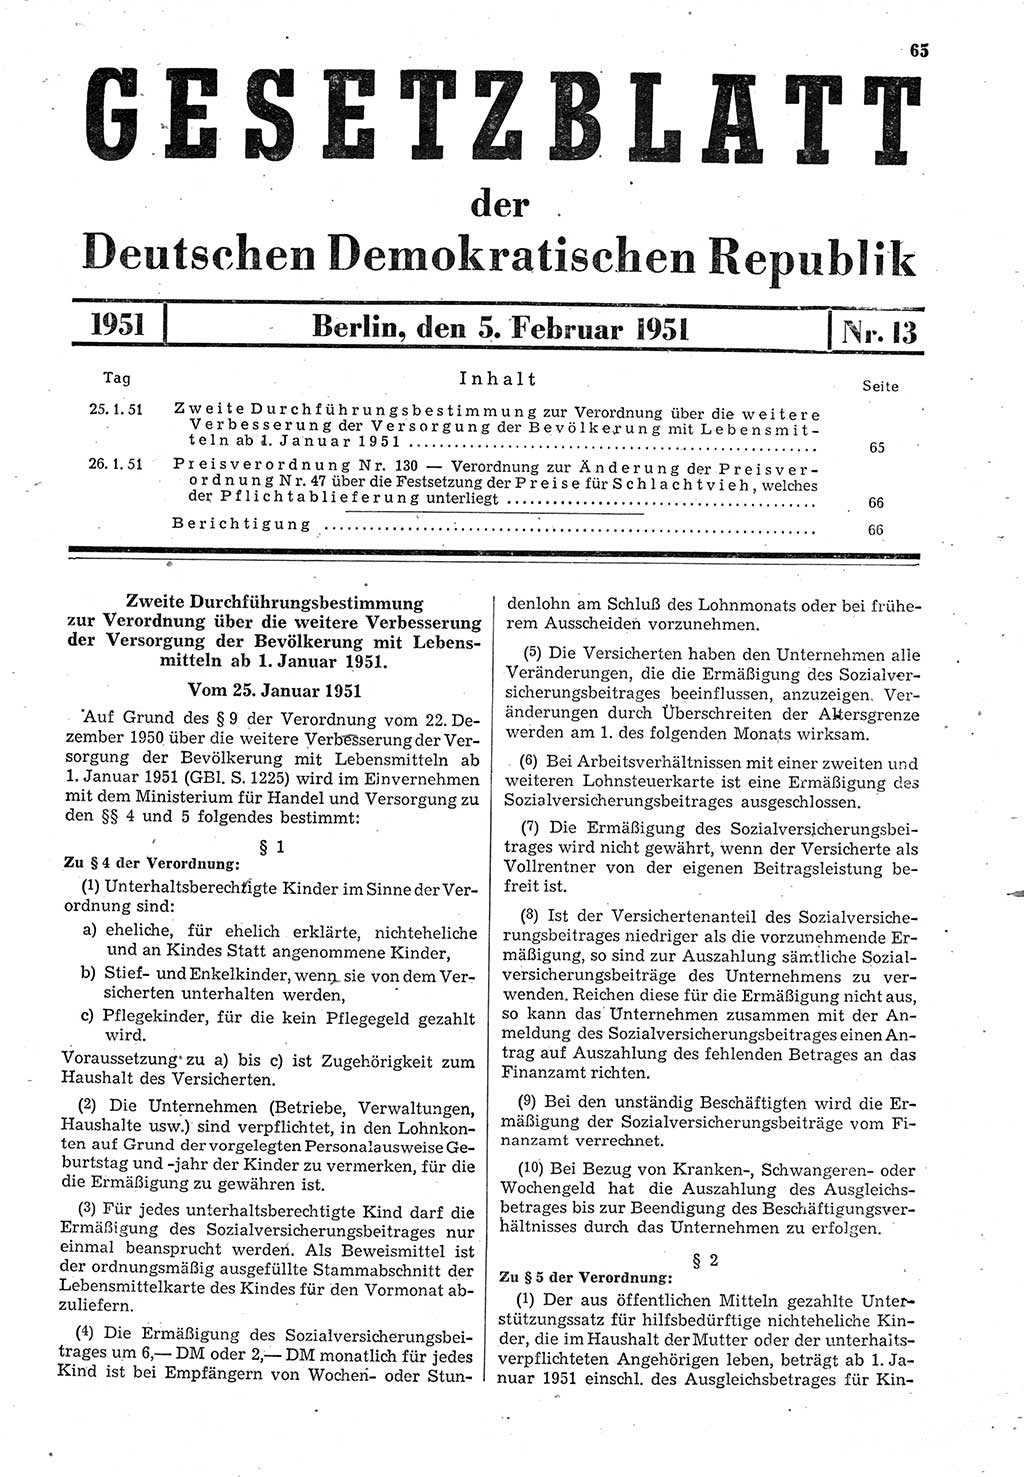 Gesetzblatt (GBl.) der Deutschen Demokratischen Republik (DDR) 1951, Seite 65 (GBl. DDR 1951, S. 65)